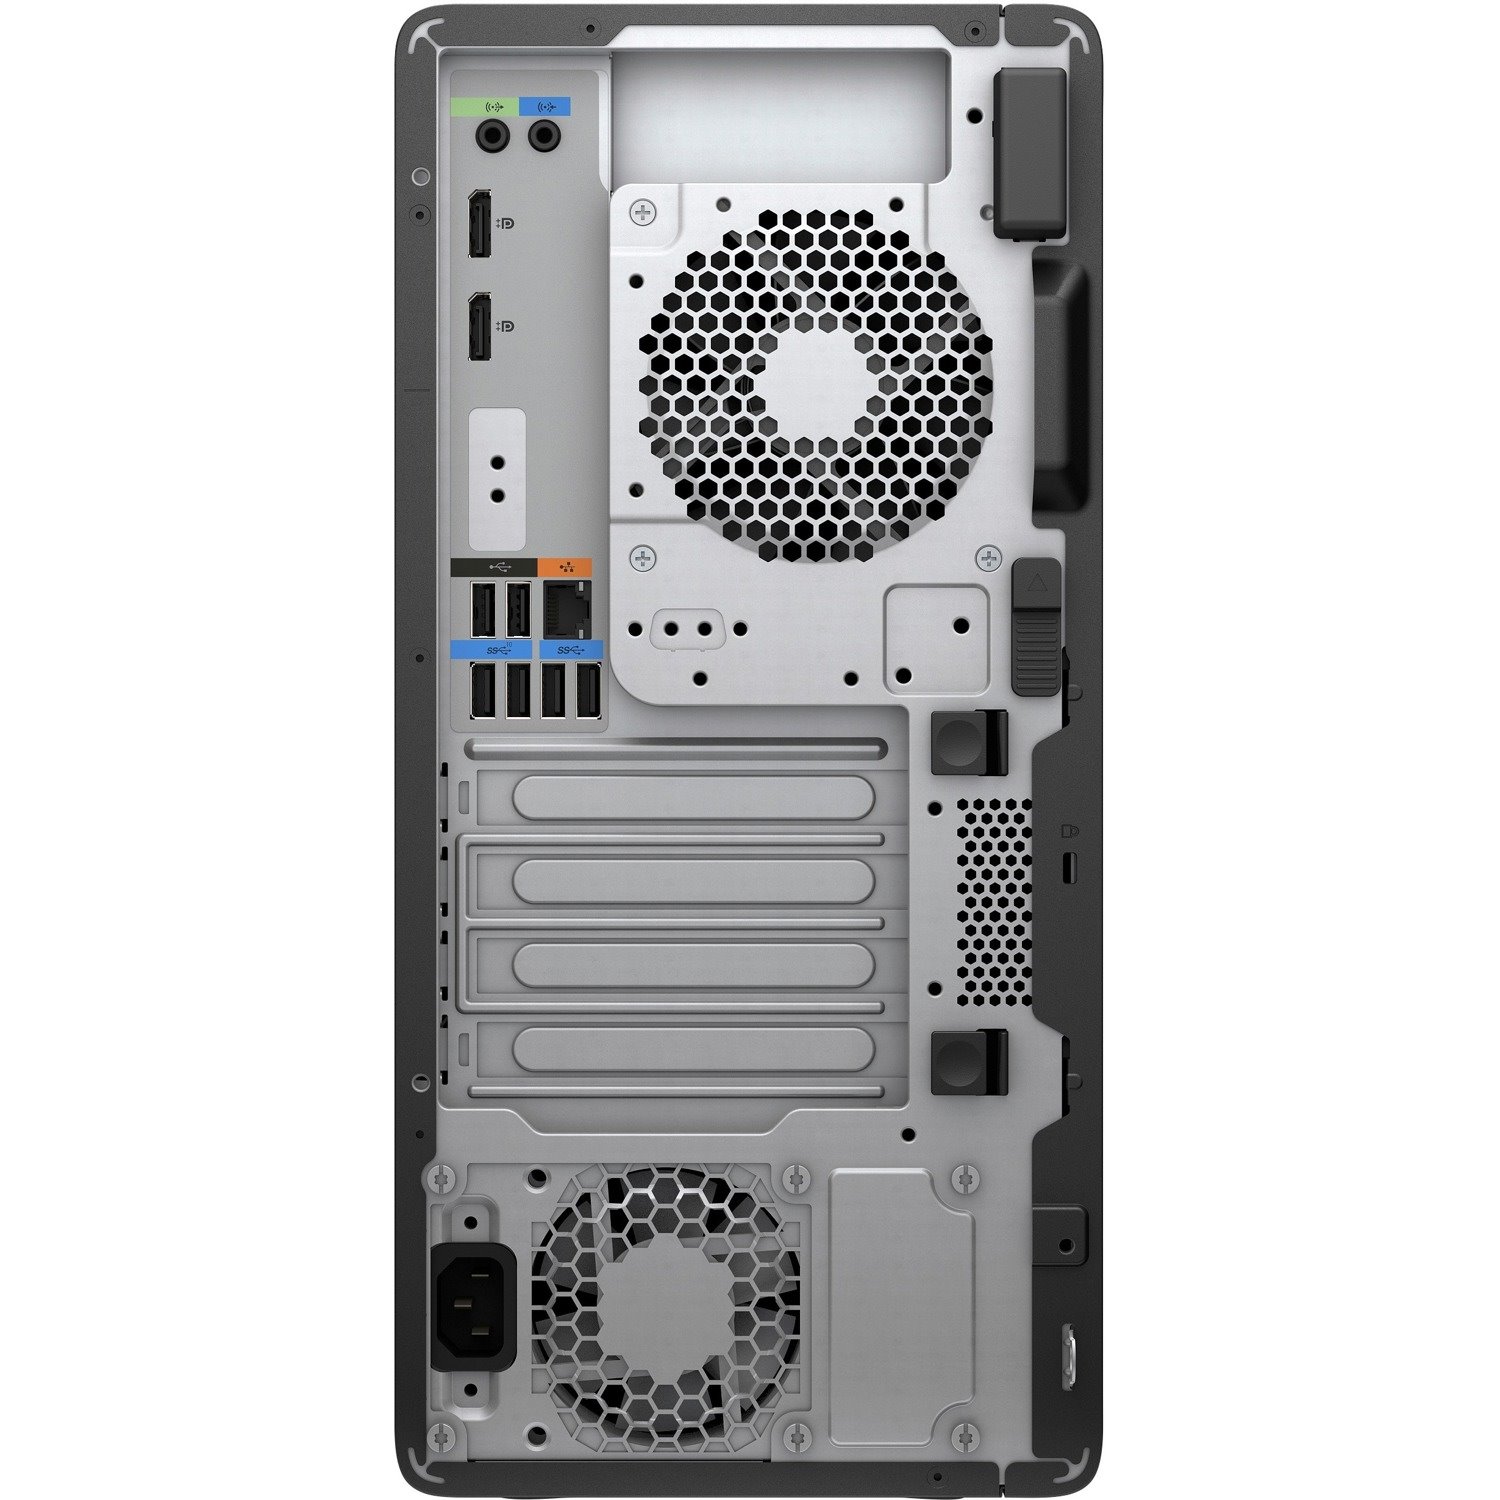 HP Z2 G5 Workstation - 1 x Intel Xeon W-1250P - 64 GB